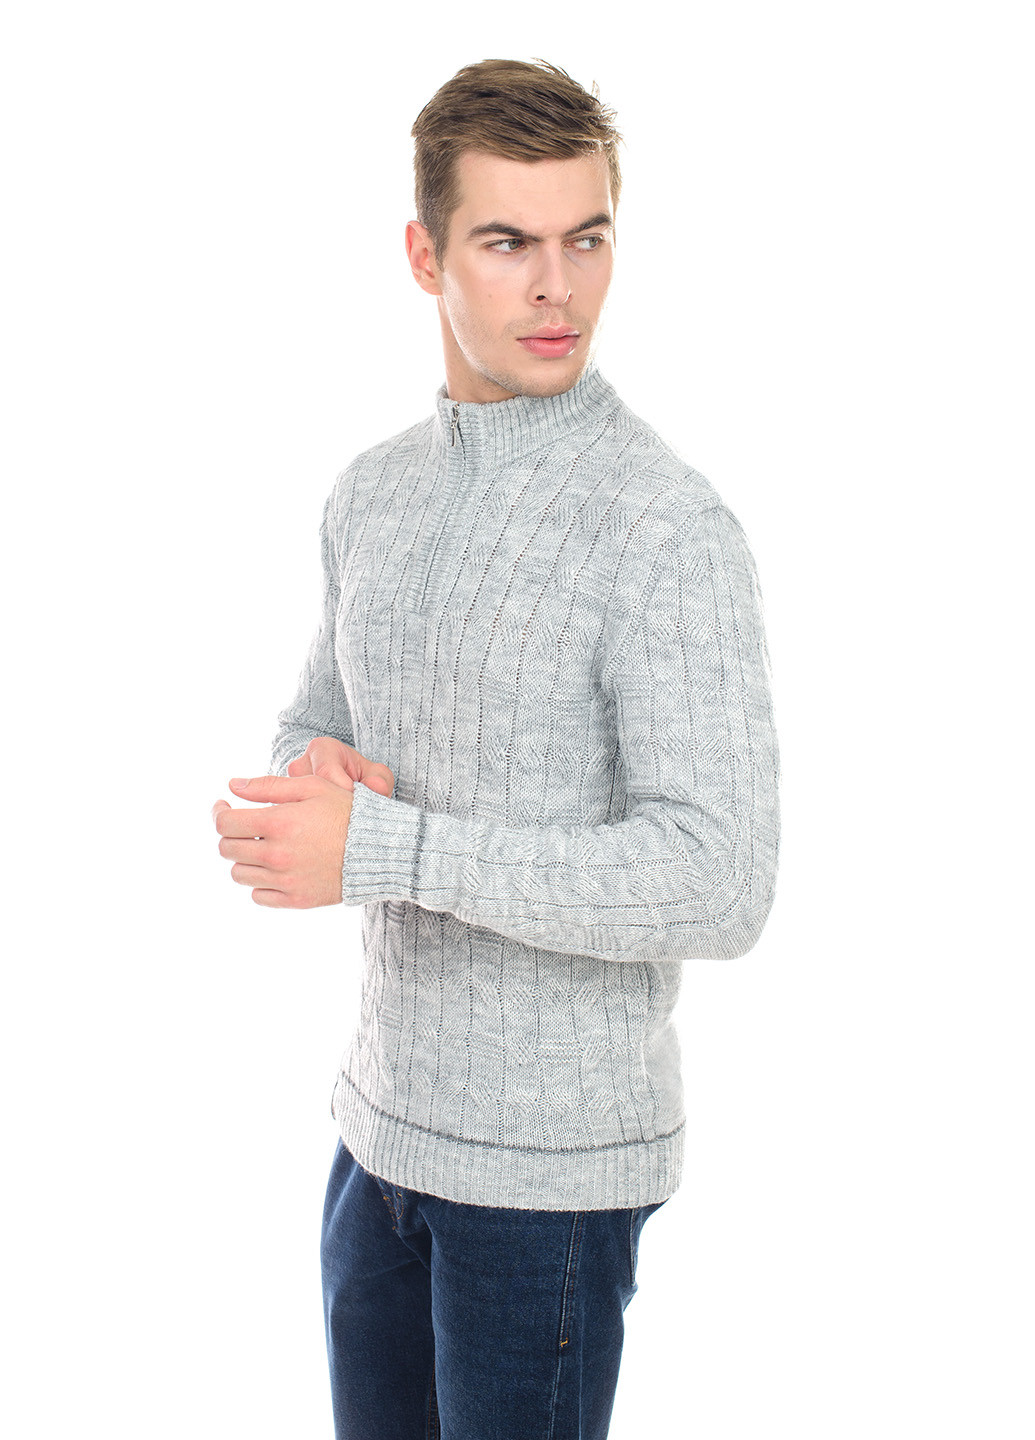 Светло-серый мужской свитер с узором и воротником на змейке SVTR